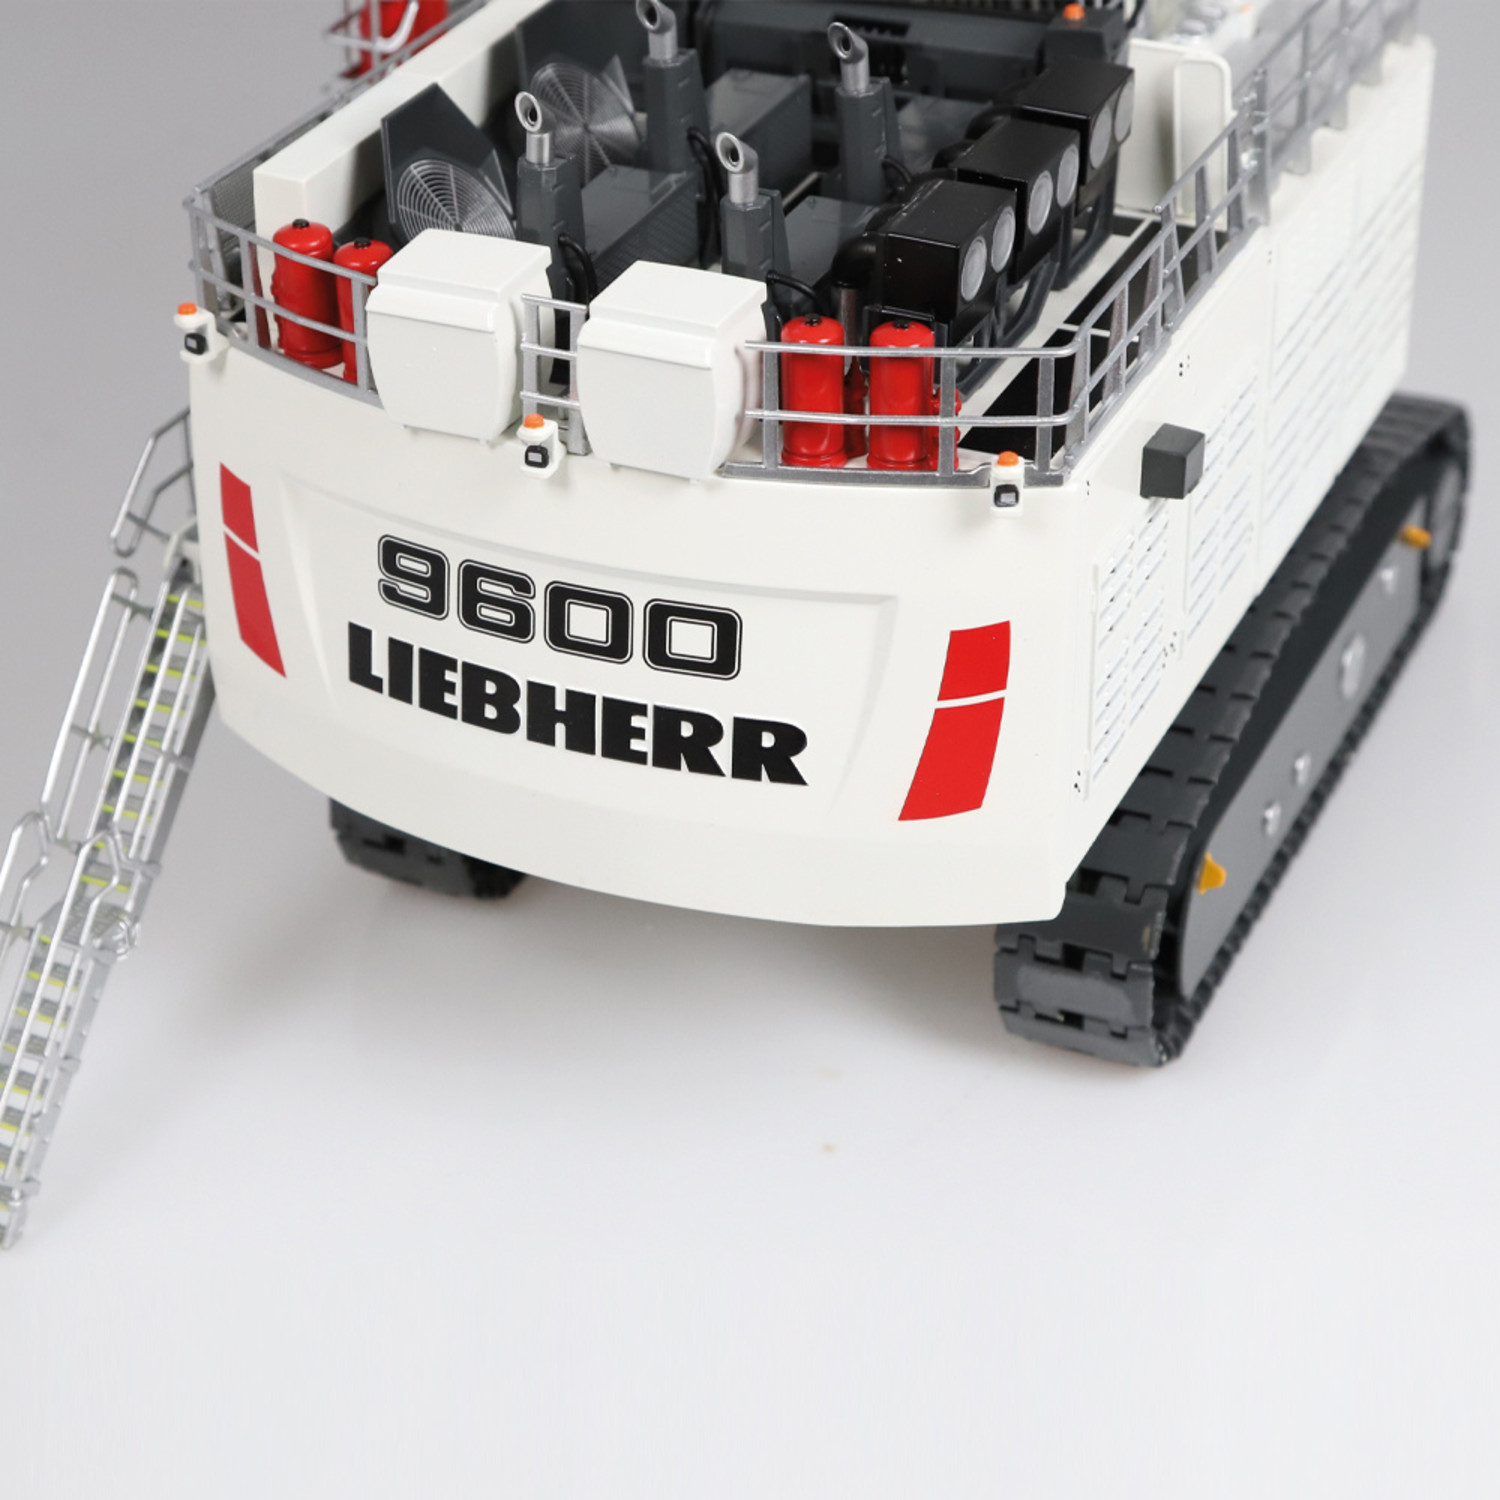 Liebherr R9600 -